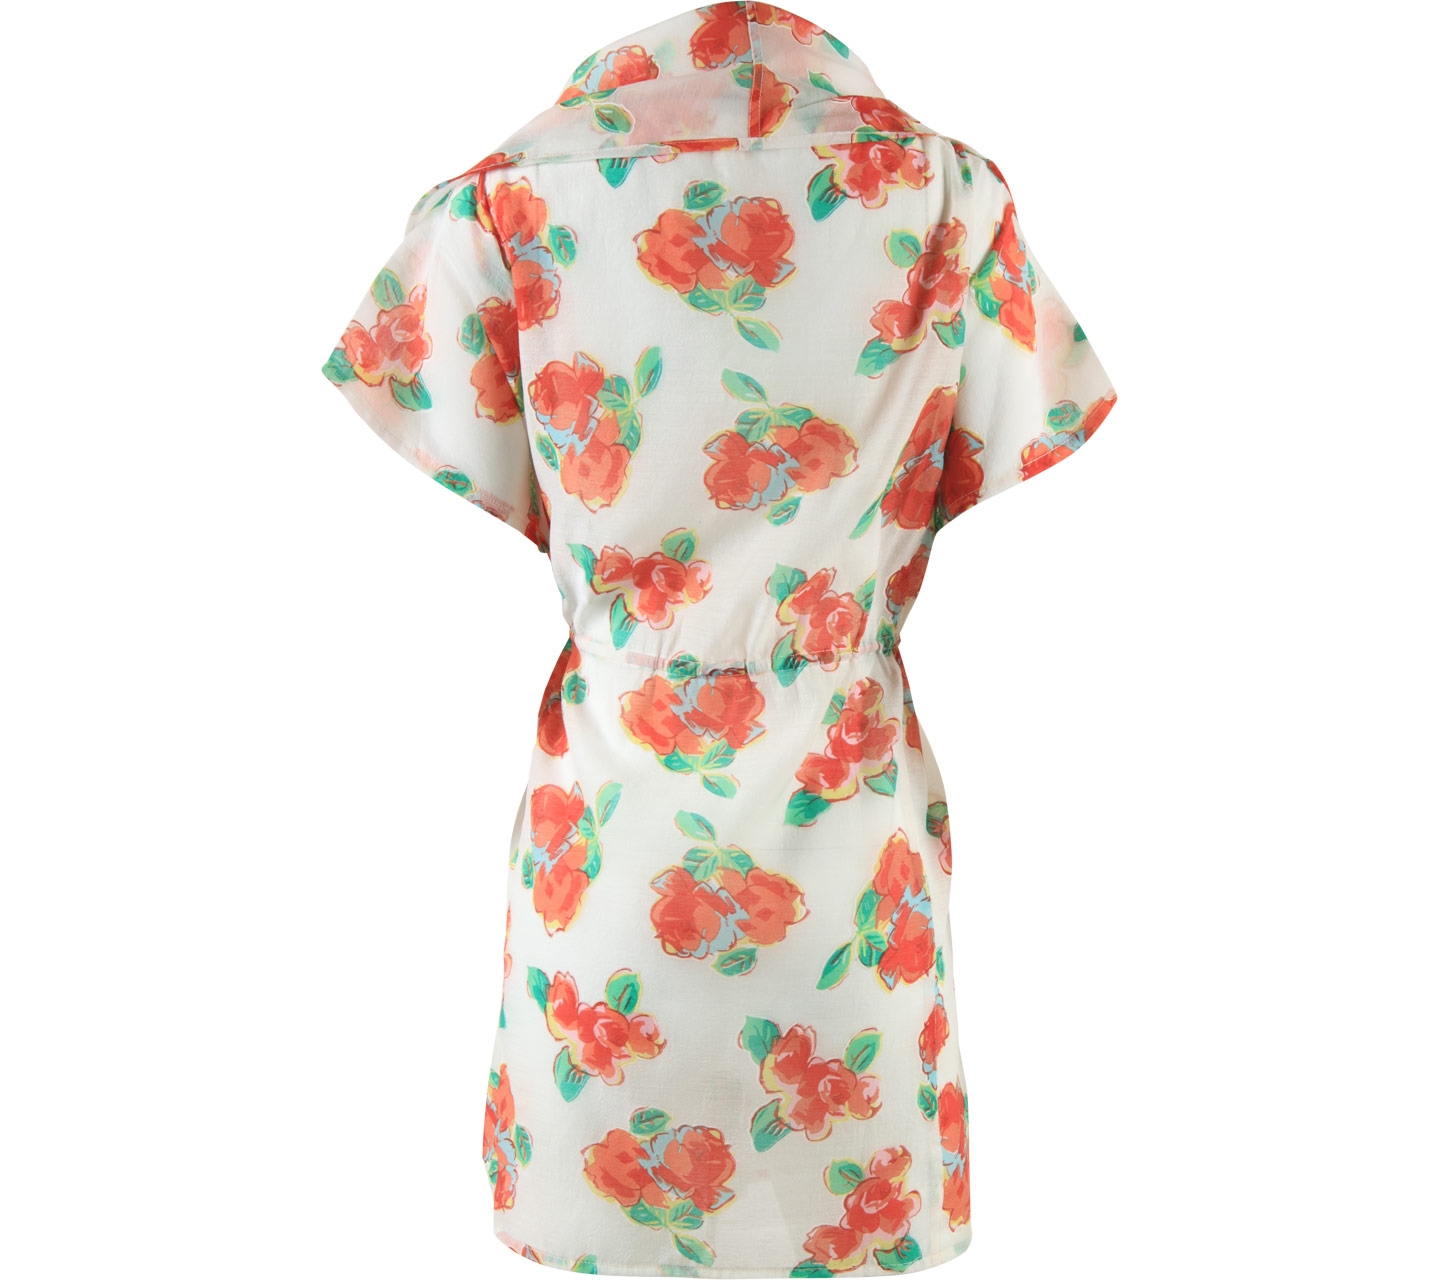 Soep Shop Multi Colour Floral Outerwear